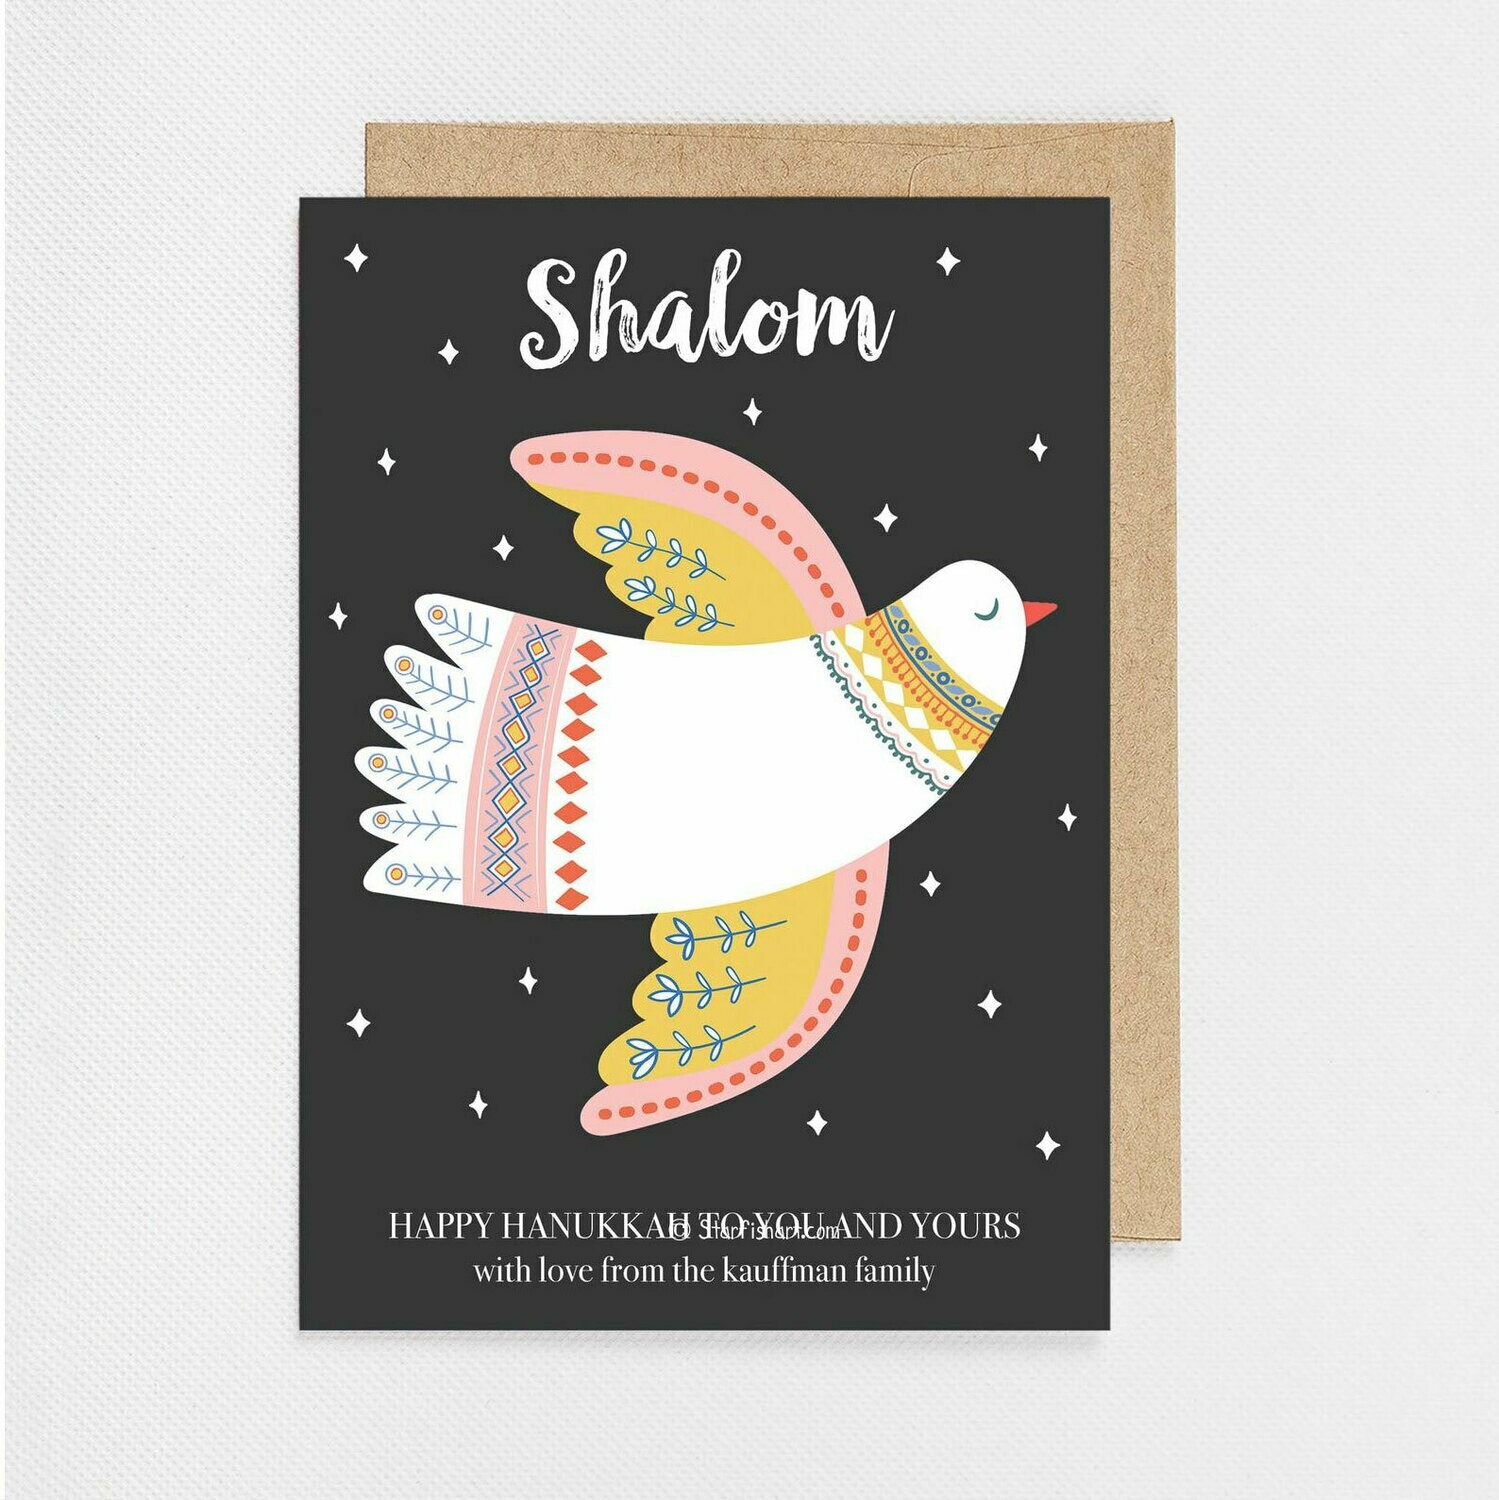 Hanukkah Shalom Holiday Card - Digital or Printed